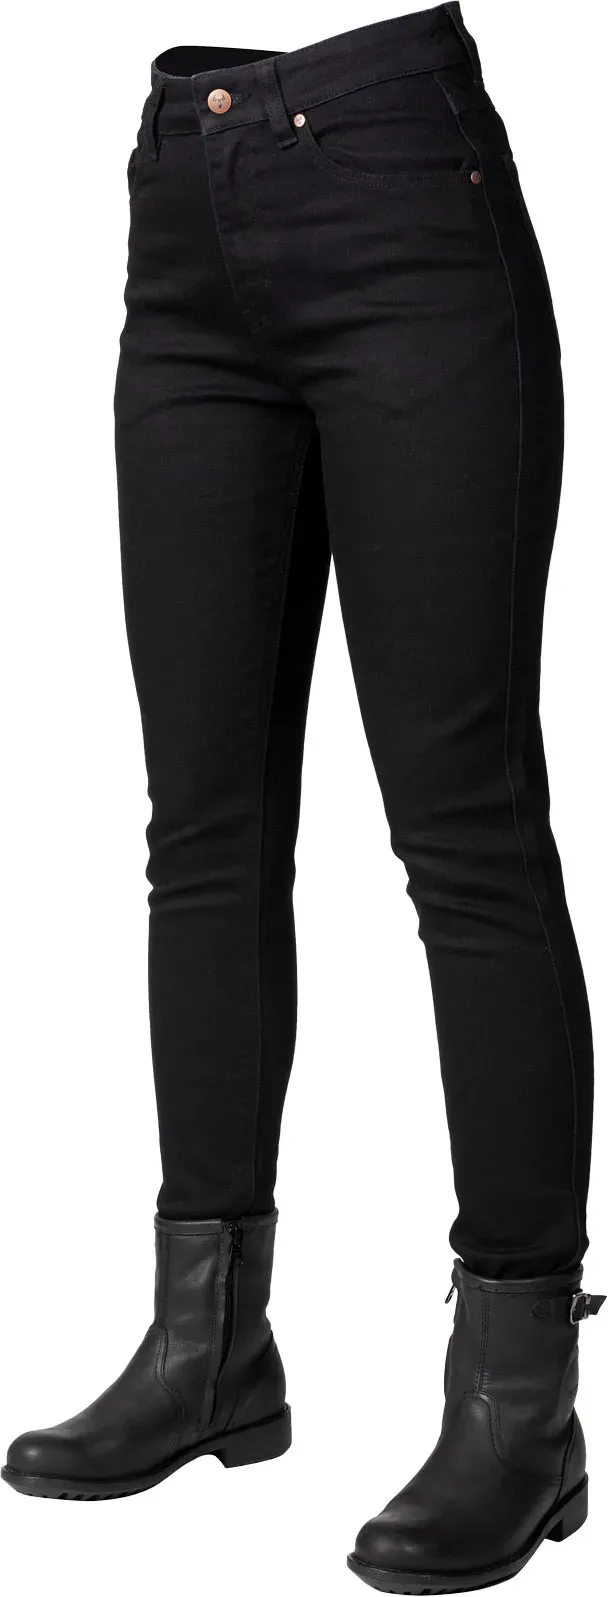 Bull-it Eclipse, jeans femmes - Noir - 34